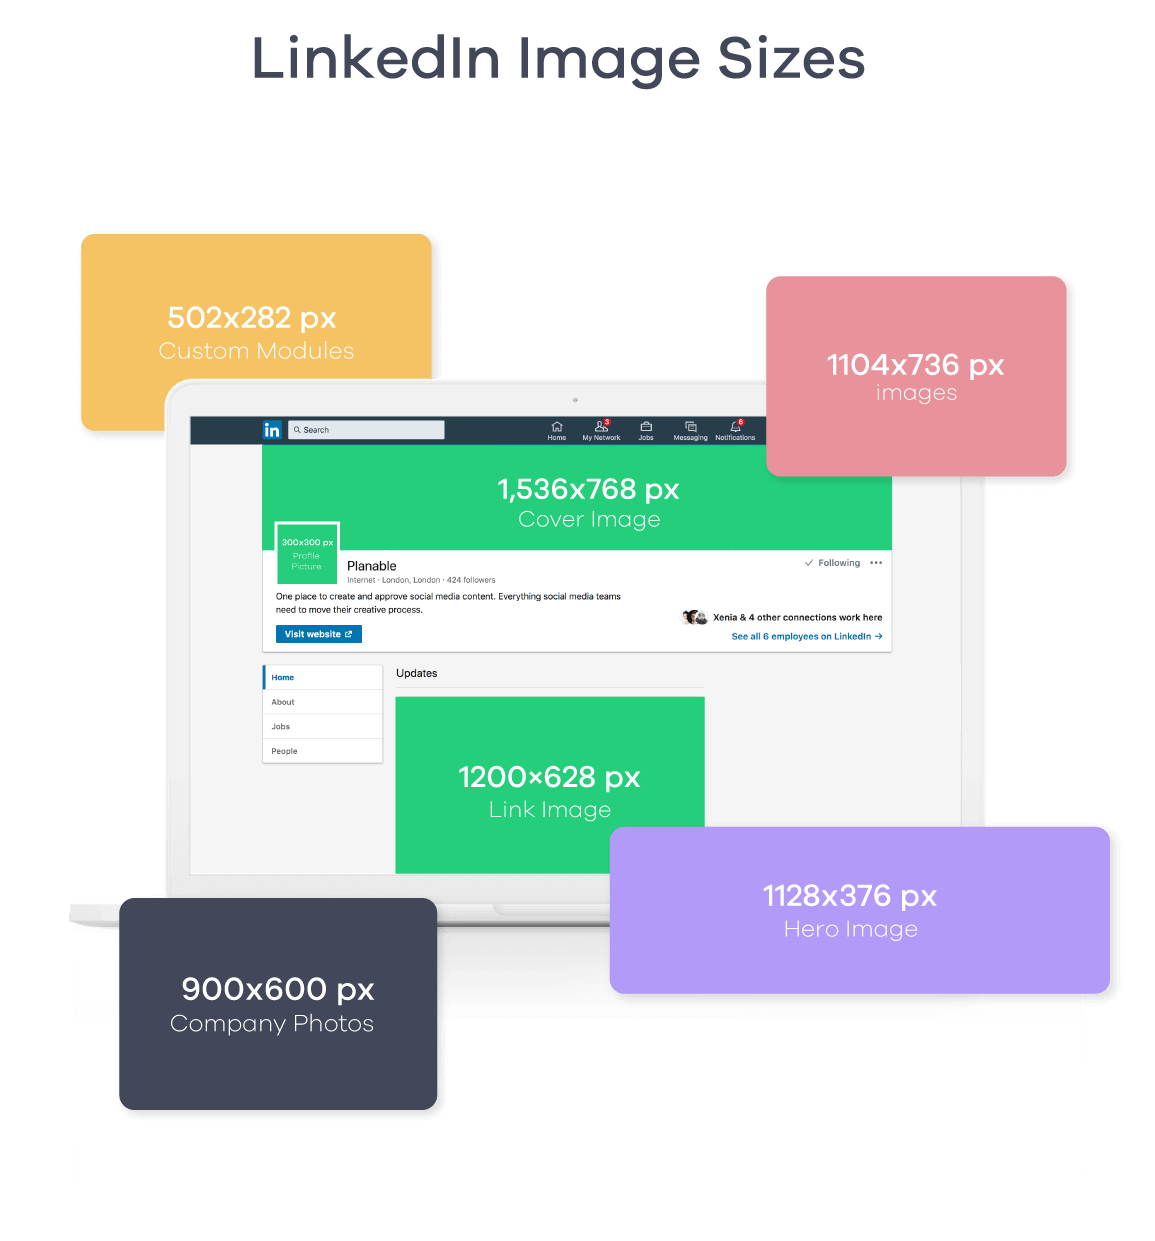 linkedin image sizes 2019 - Planable